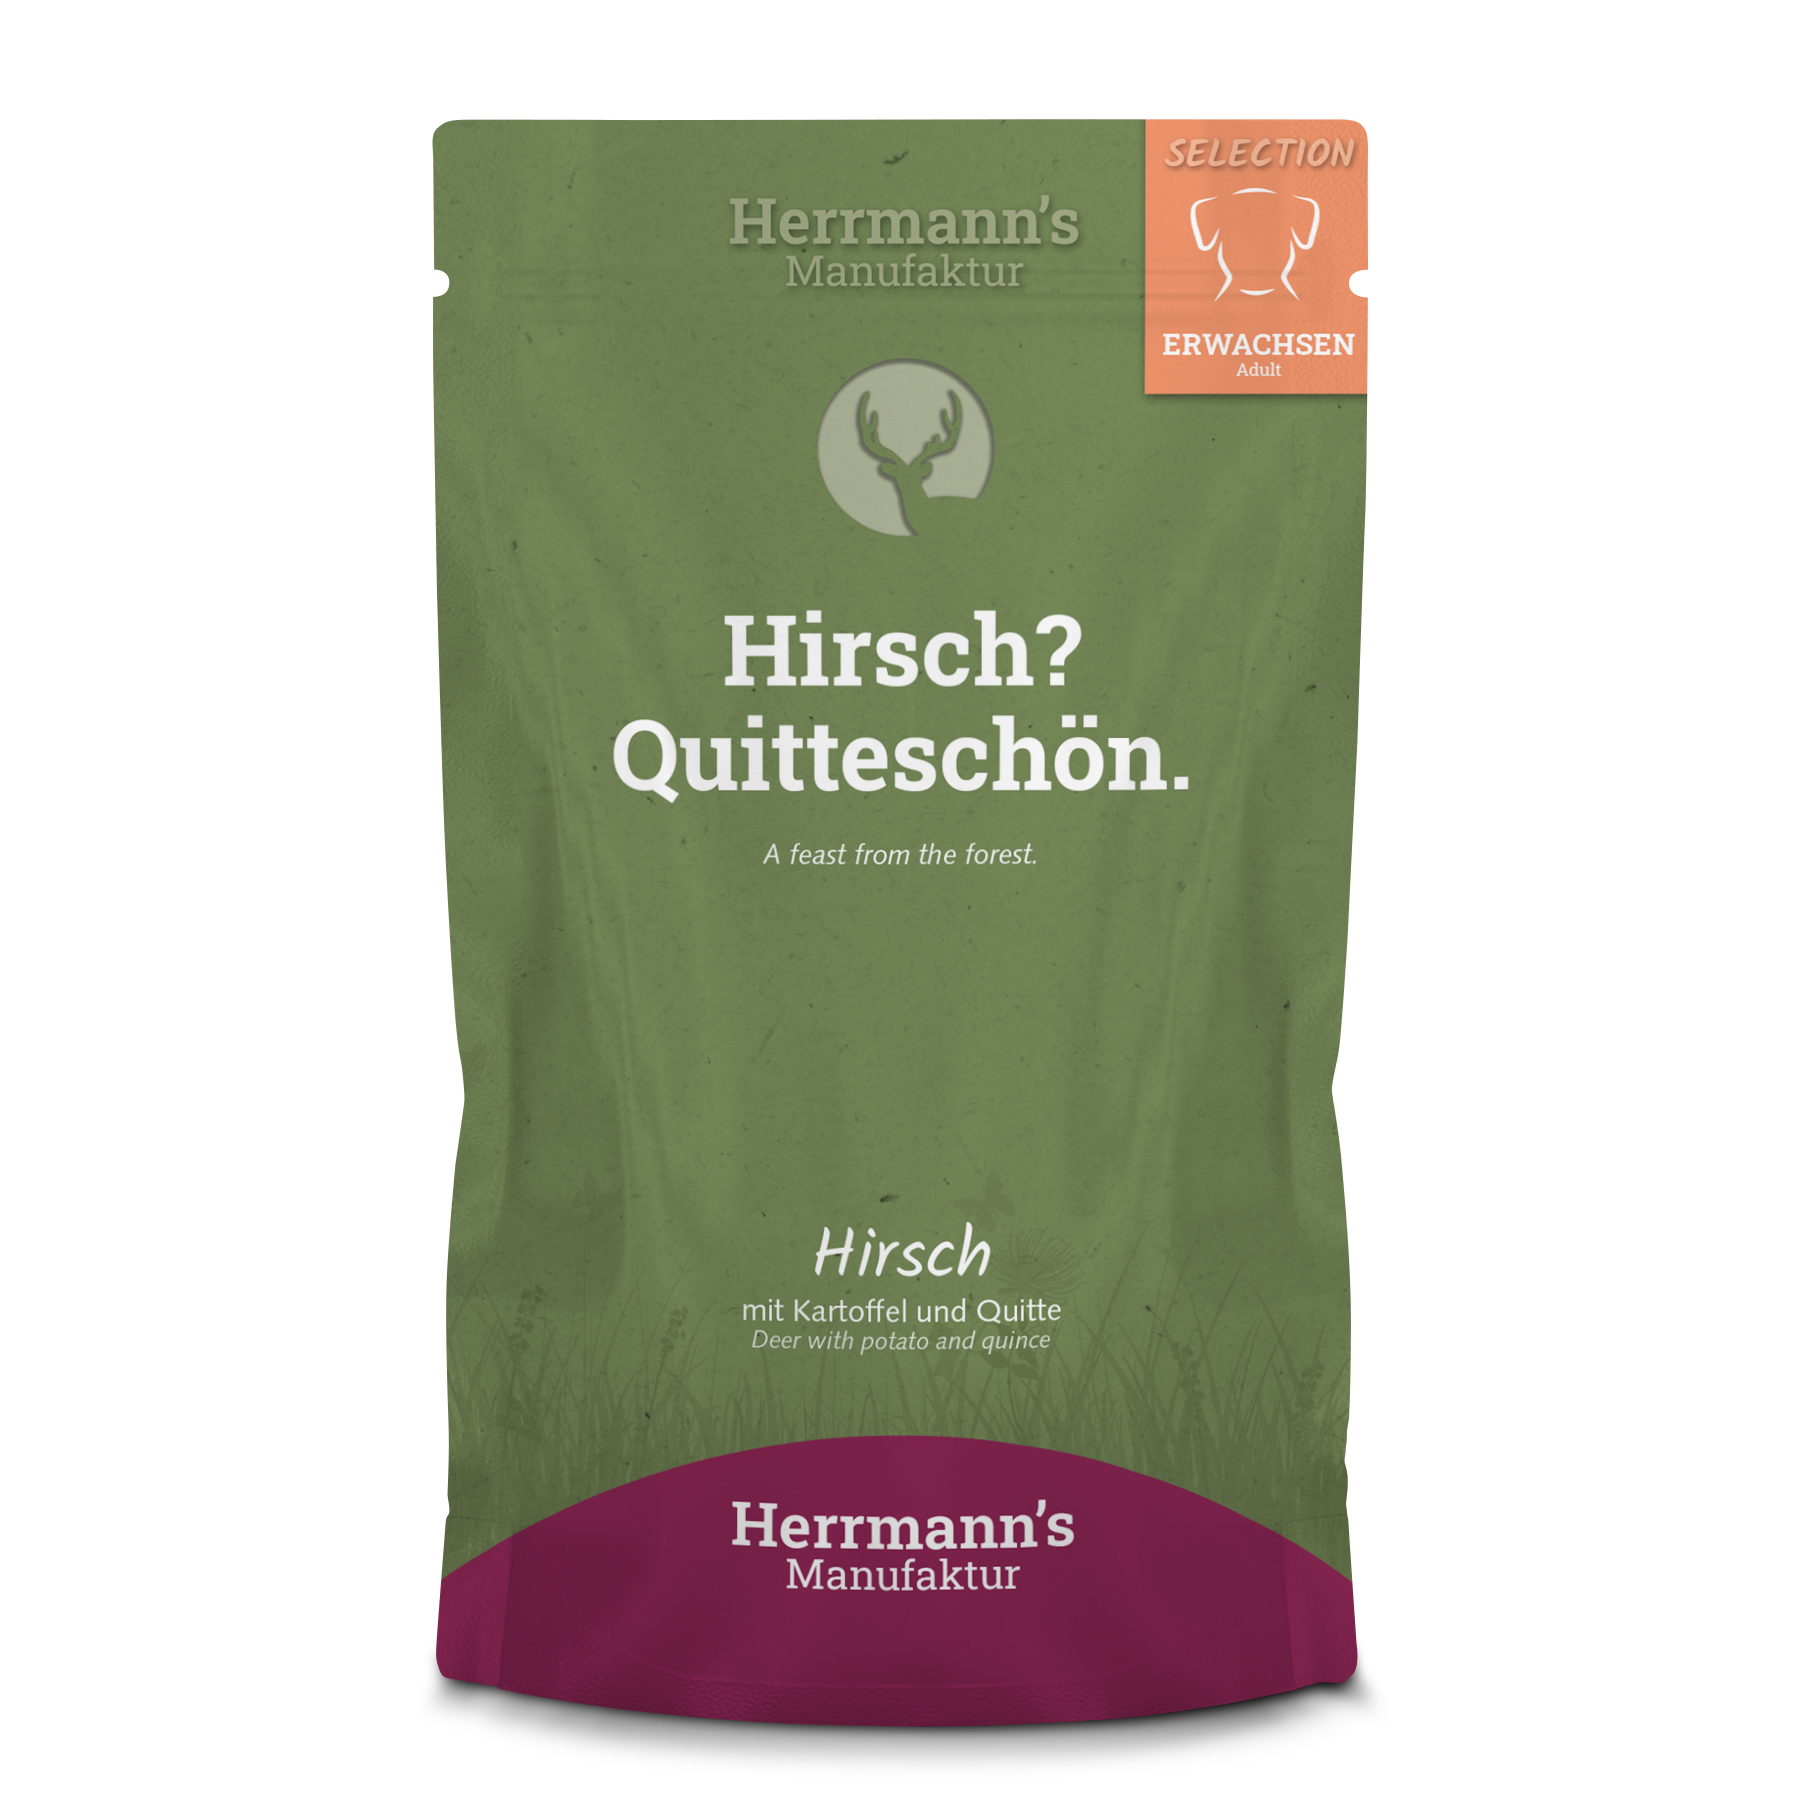 4er-SET Hundefutter Hirsch NICHT BIO mit Kartoffel und Quitte 150g Herrmann's - Bild 1